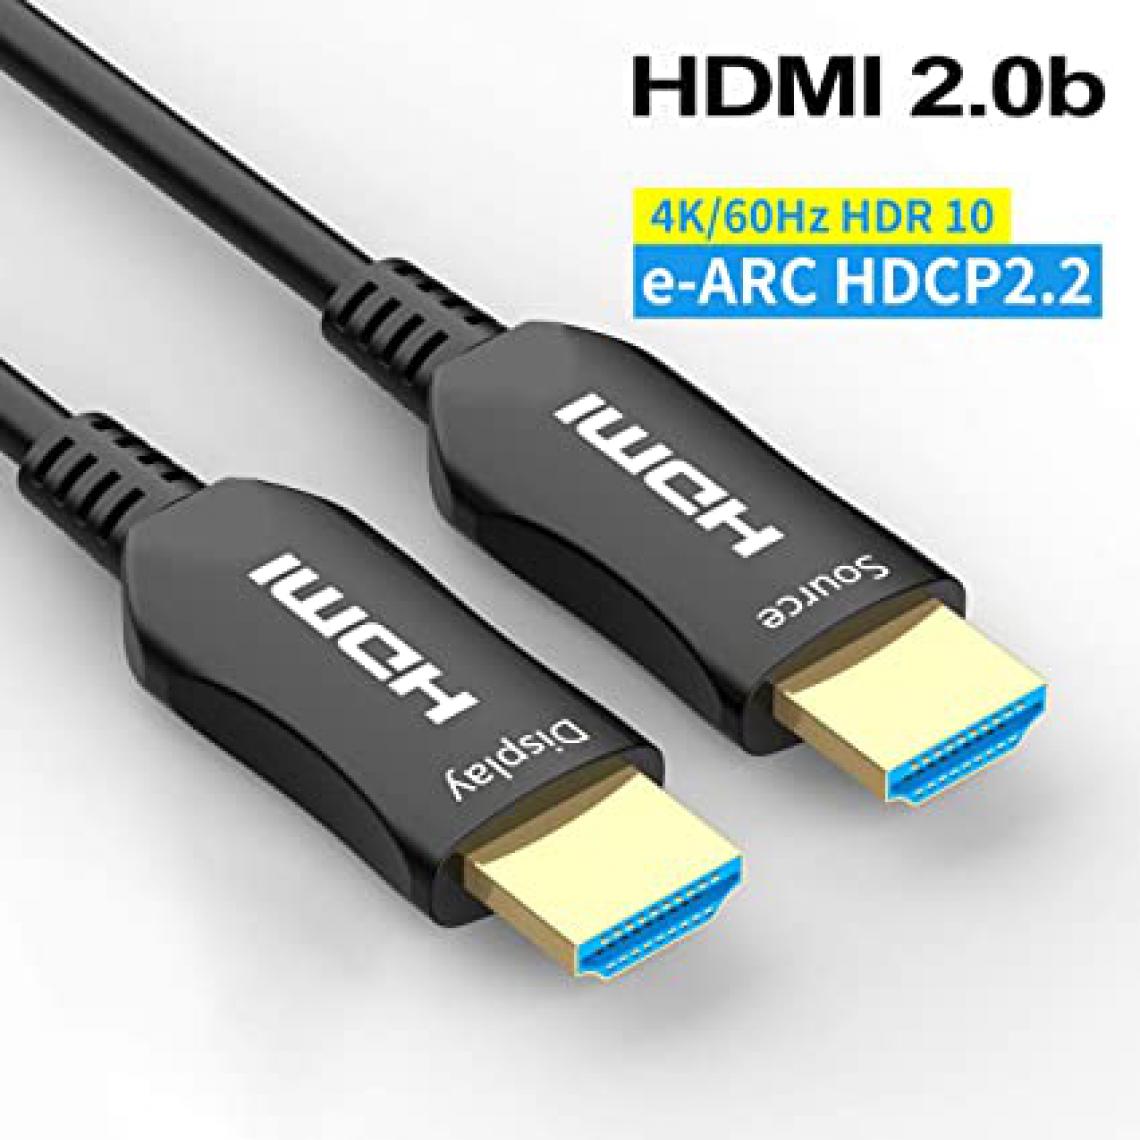 Mcl - HDMI 2.0 FIBER OPTIC CABLE 10M - Adaptateurs